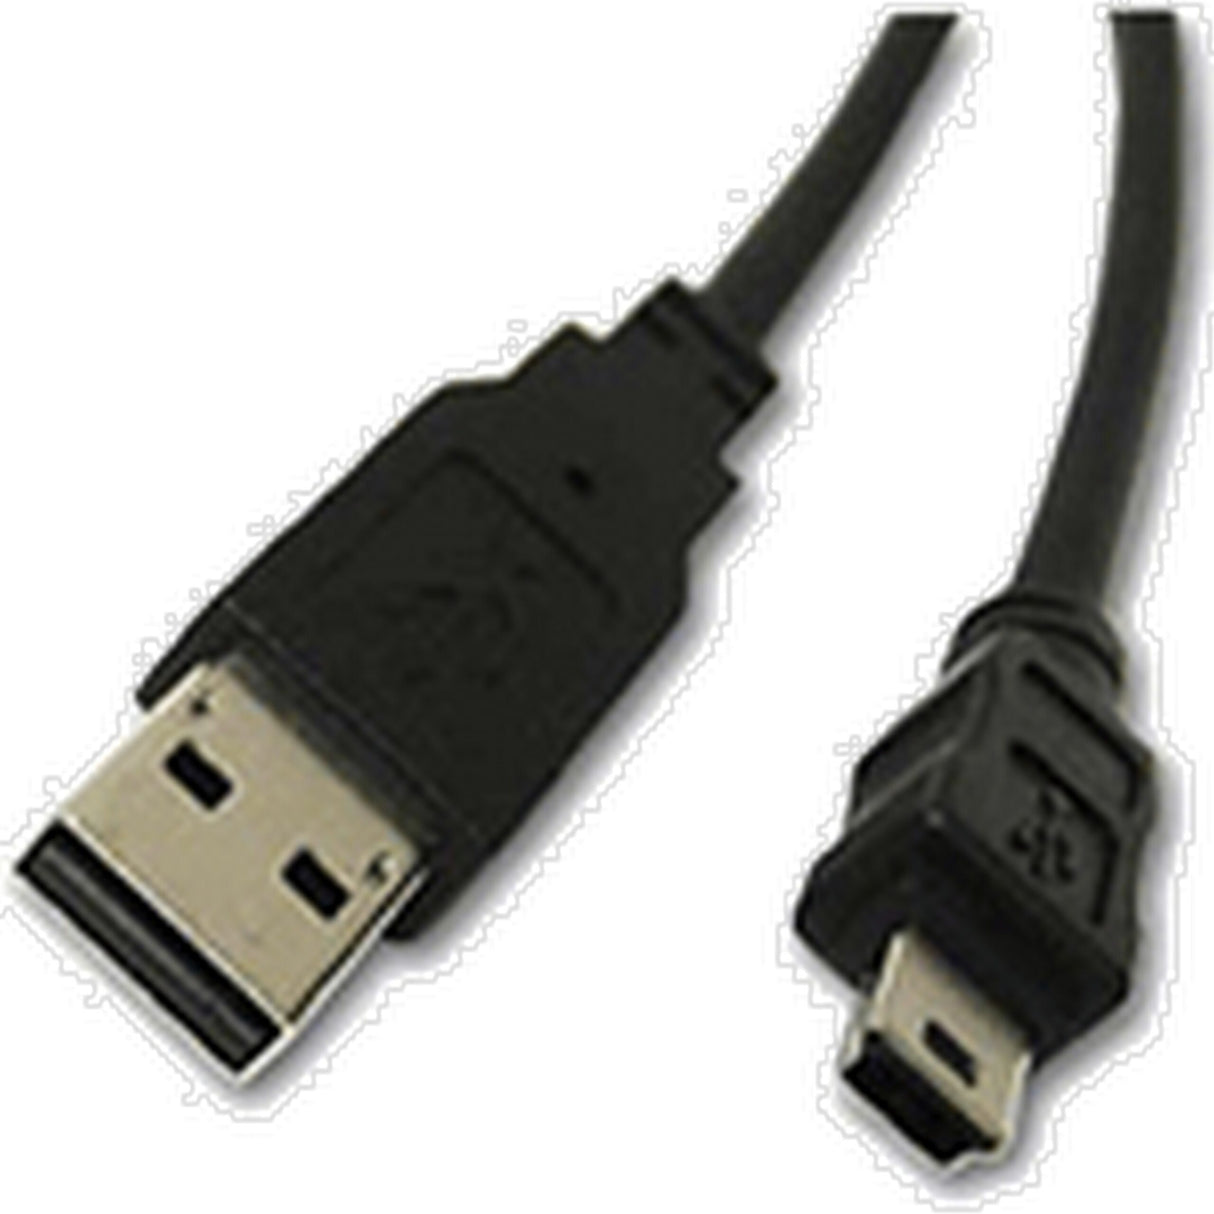 Elmo 5ZA0000180 Replacement USB Cable for TT-12, TT-12i, TT-12iD